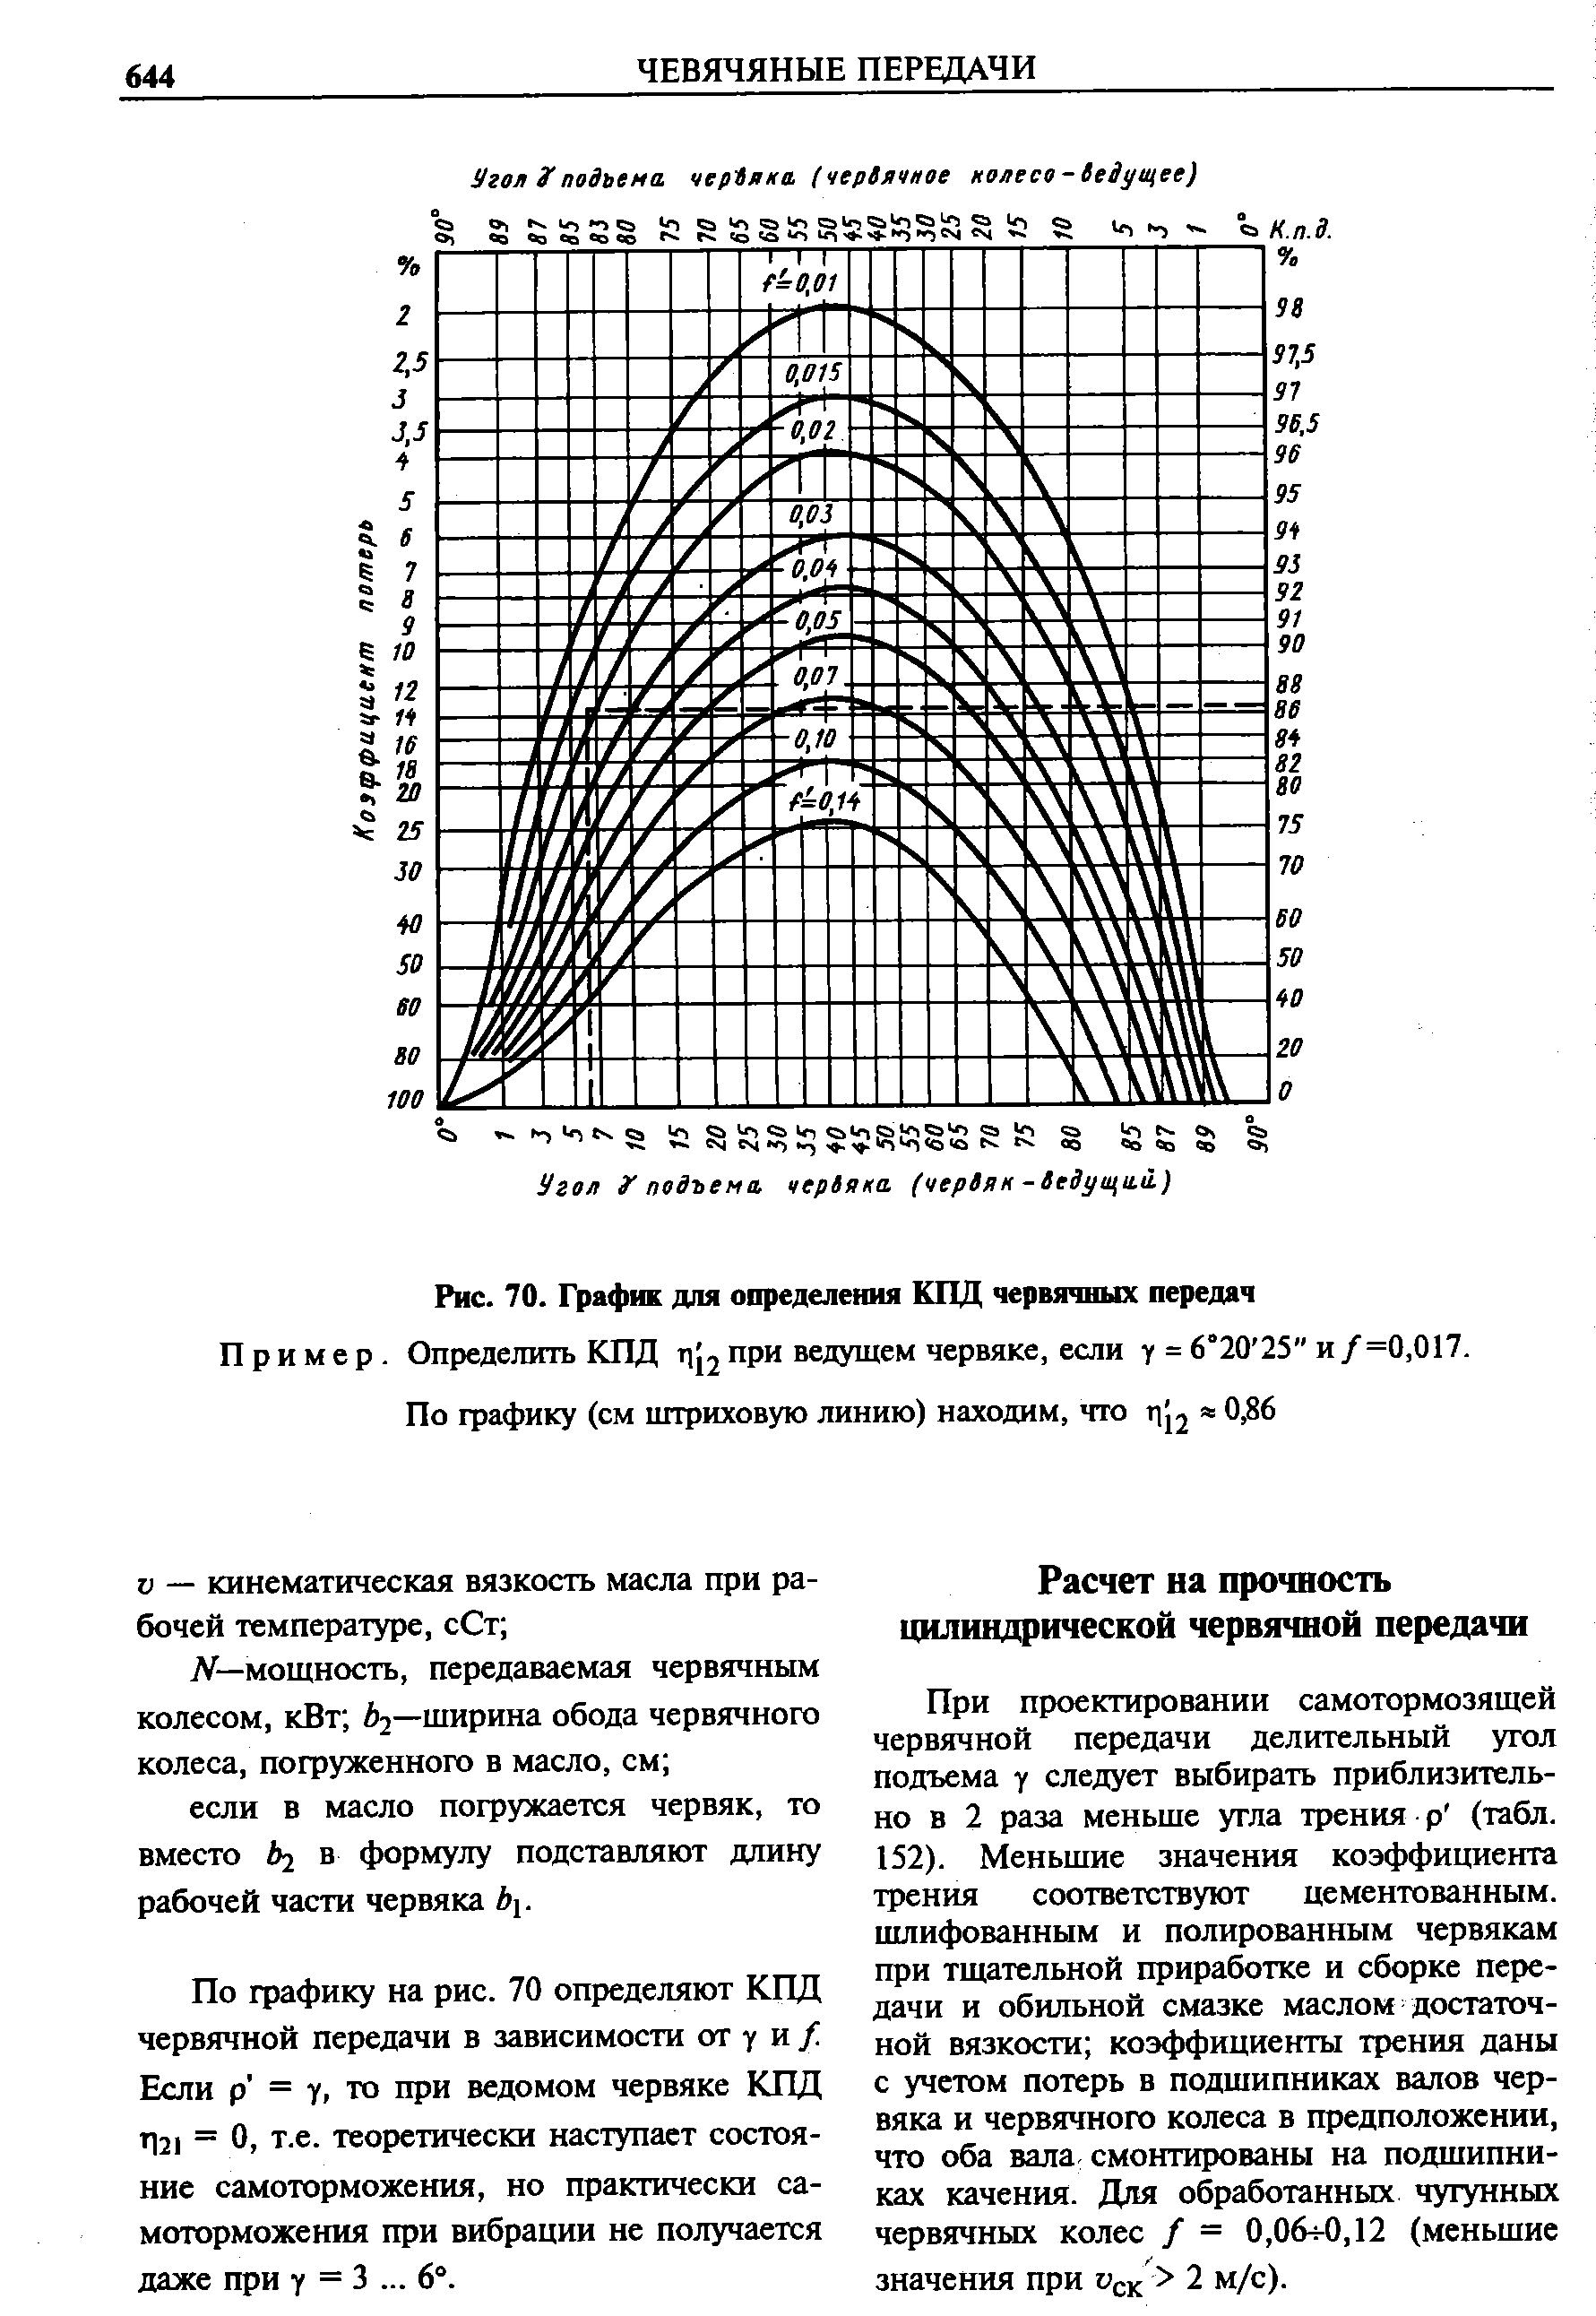 Рис. 70. График для определения КПД червячных передач
